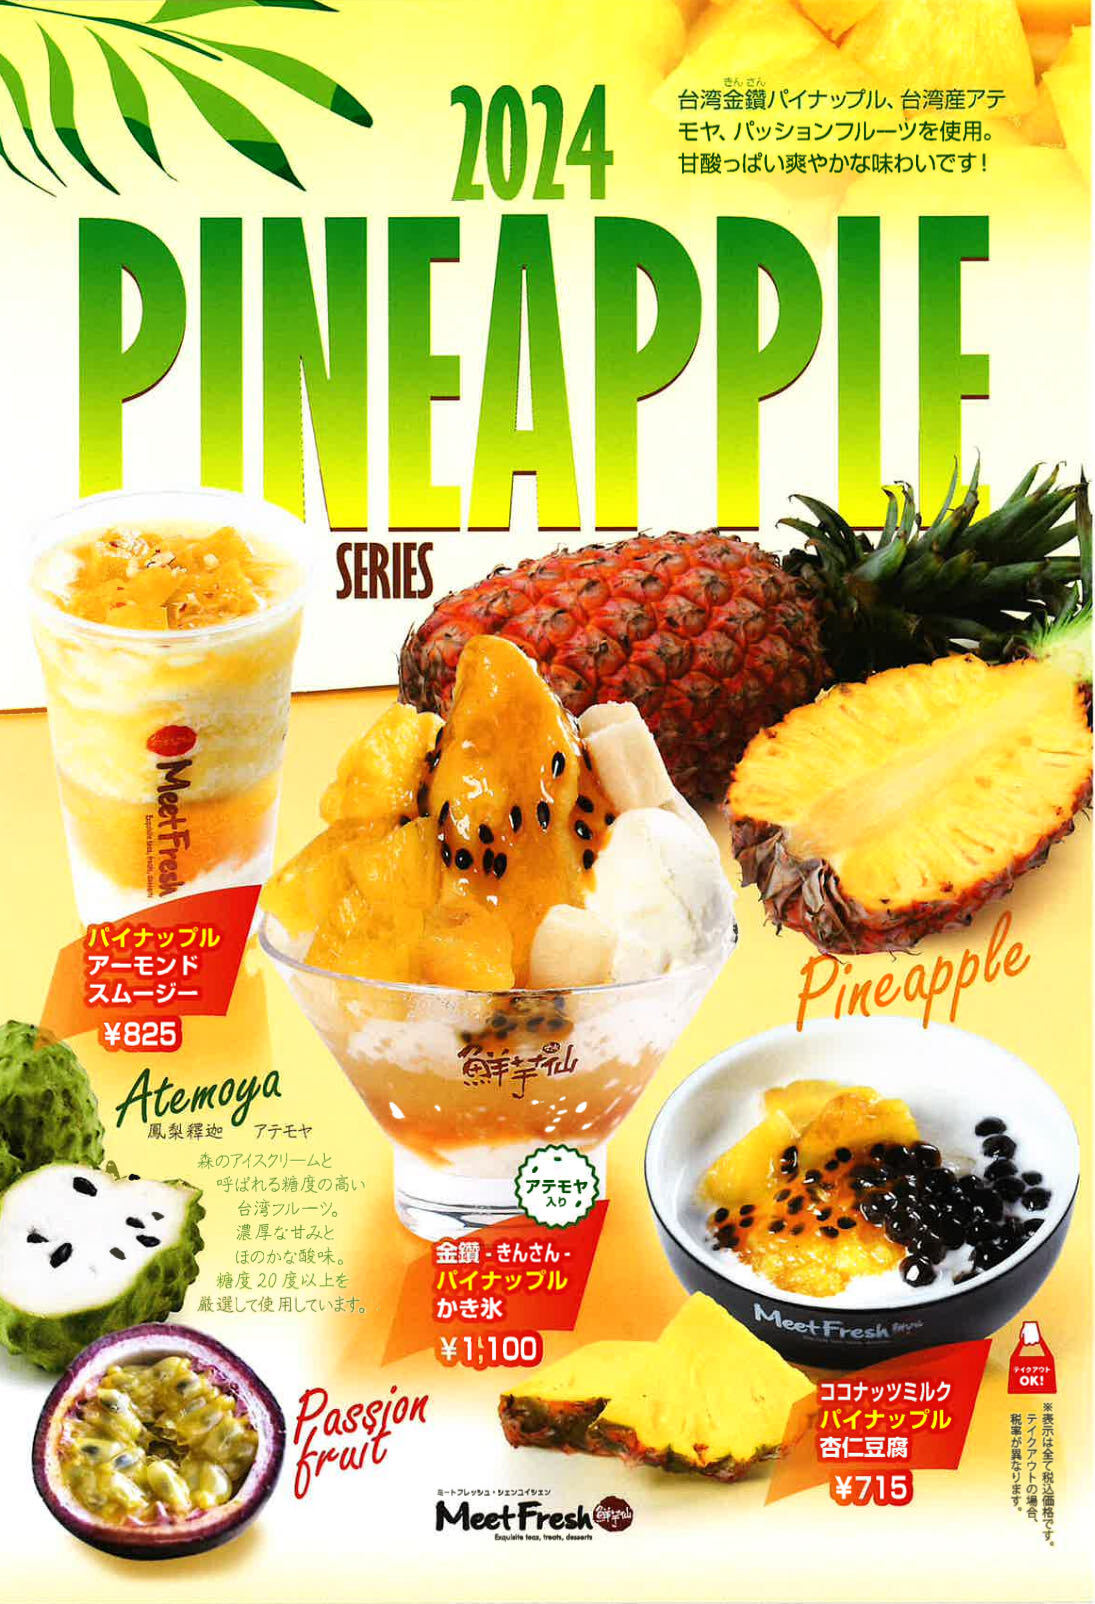 台湾産フルーツを贅沢に使った“冷たいスイーツ”が登場！
絶品初夏の新作パイナップルシリーズを
6月7日(金)よりMeetFresh 鮮芋仙 日本の全店舗で販売開始